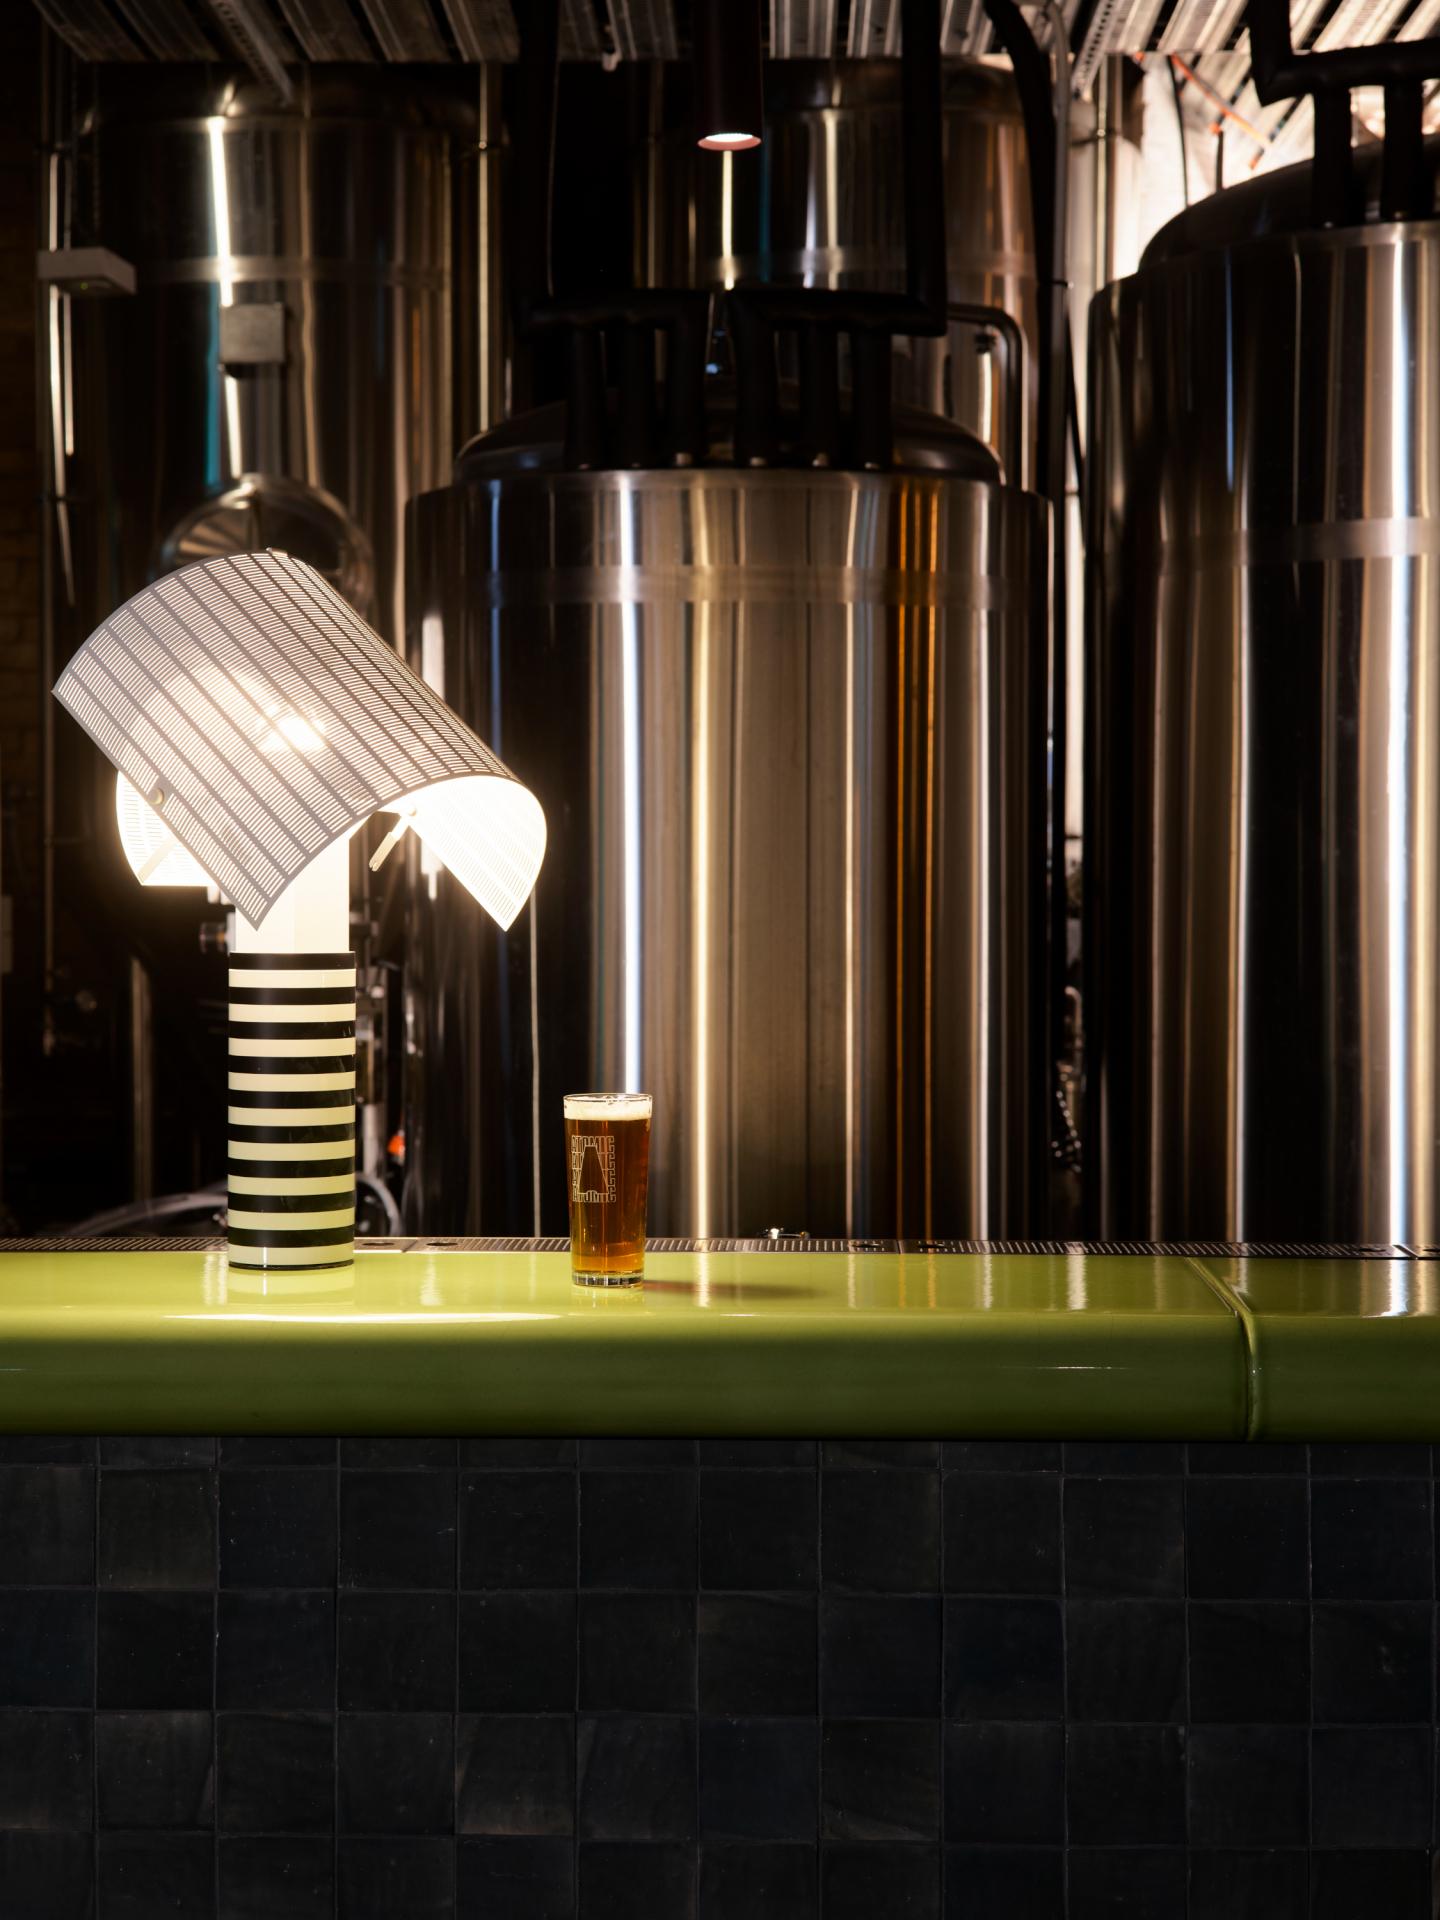 Inside a Tron-inspired futuristic brewpub in Sydney, Australia